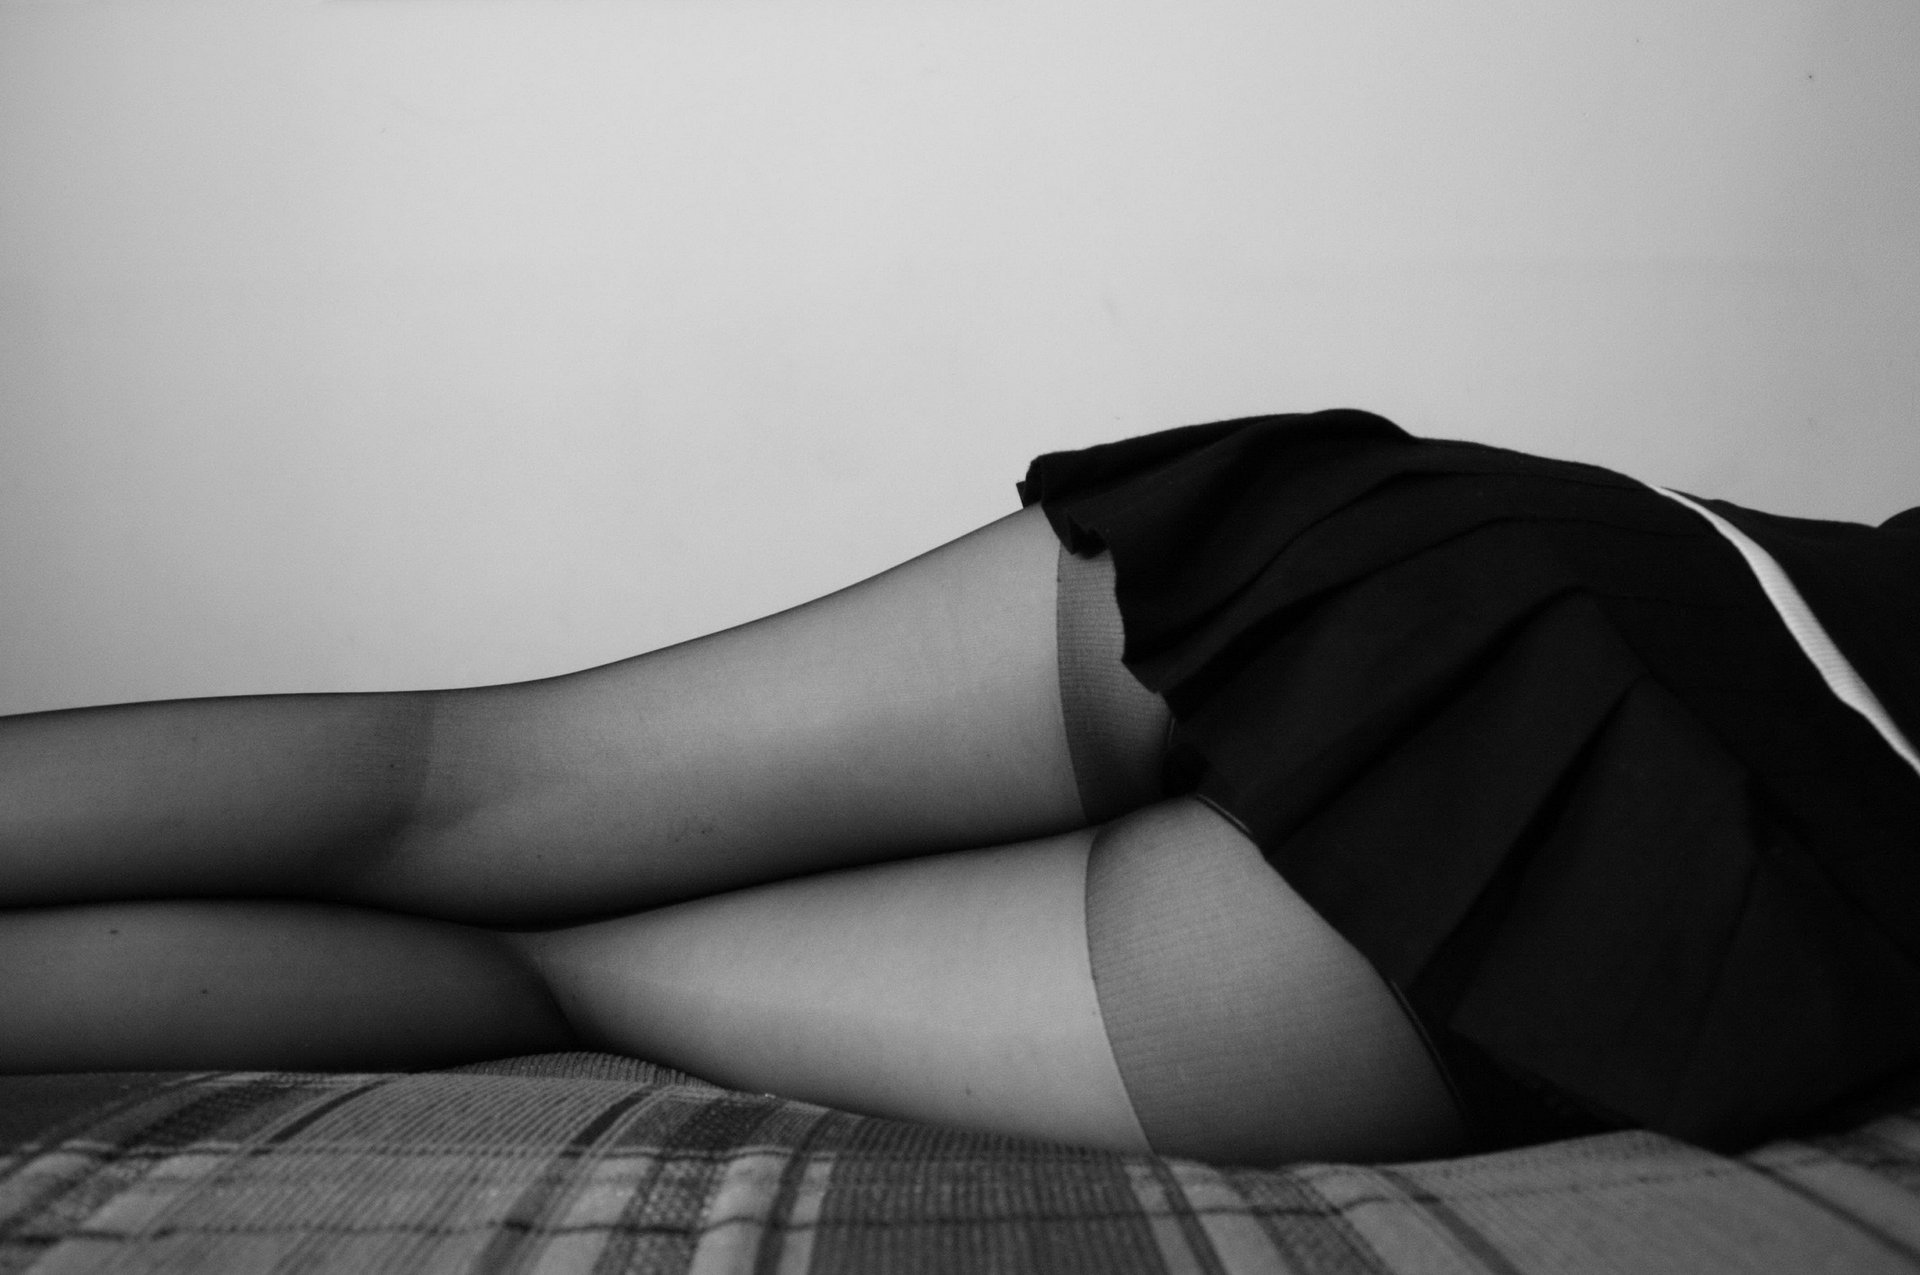 Длинноногая женщина в сексуальных колготках с разрезом между ног